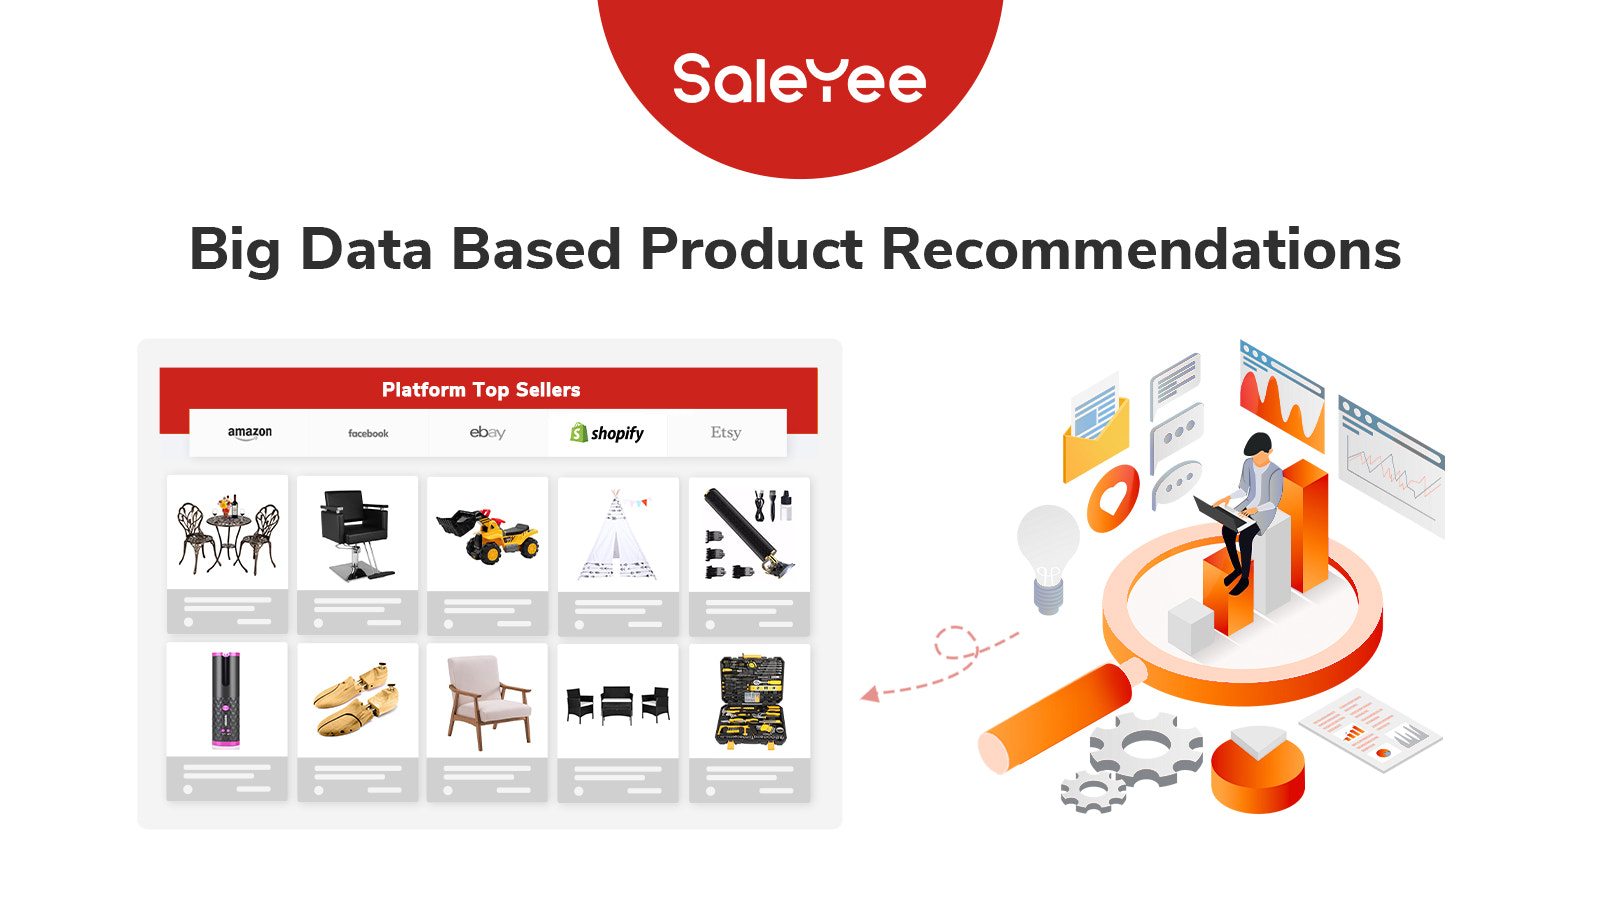 saleyee-stor-data-baserade-produktrekommendationer